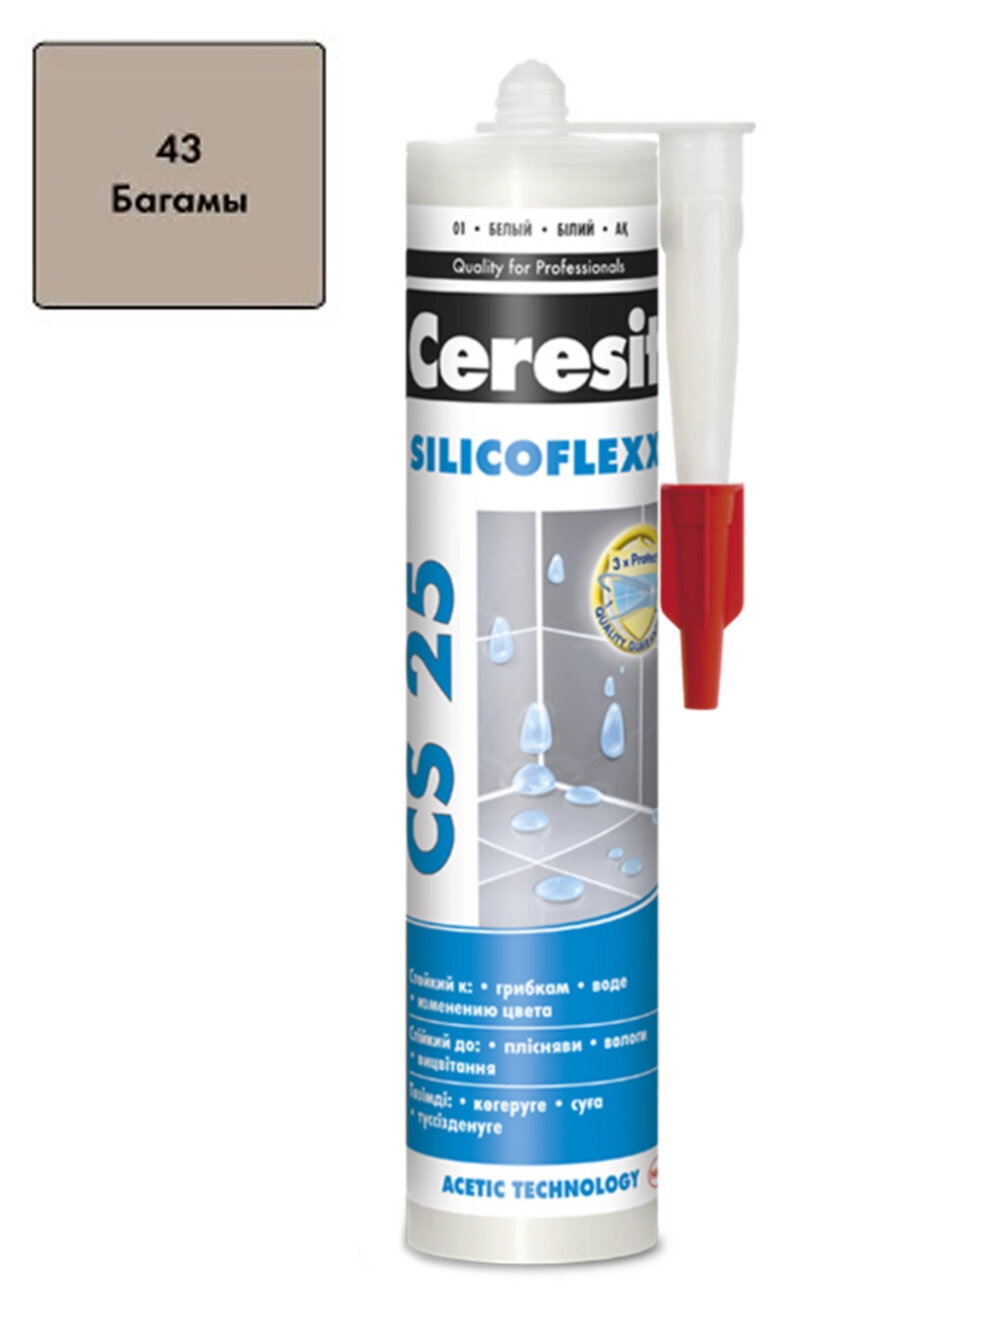 Герметик-затирка силиконовая противогрибковая Ceresit CS 25 43 багамы 280 мл.